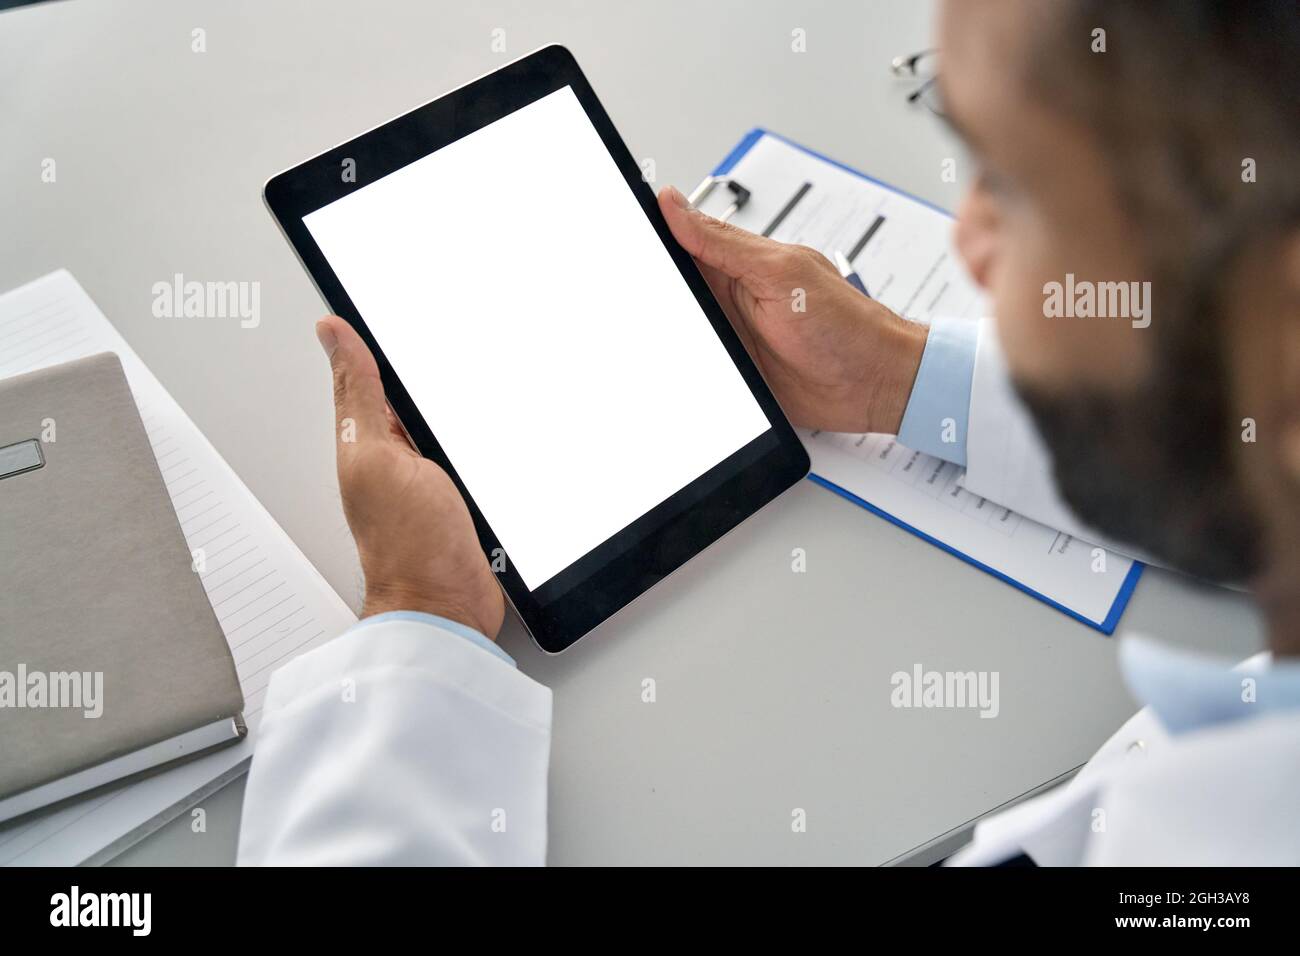 Un médecin tient une tablette numérique entre les mains et regarde l'écran de maquette blanc. Banque D'Images